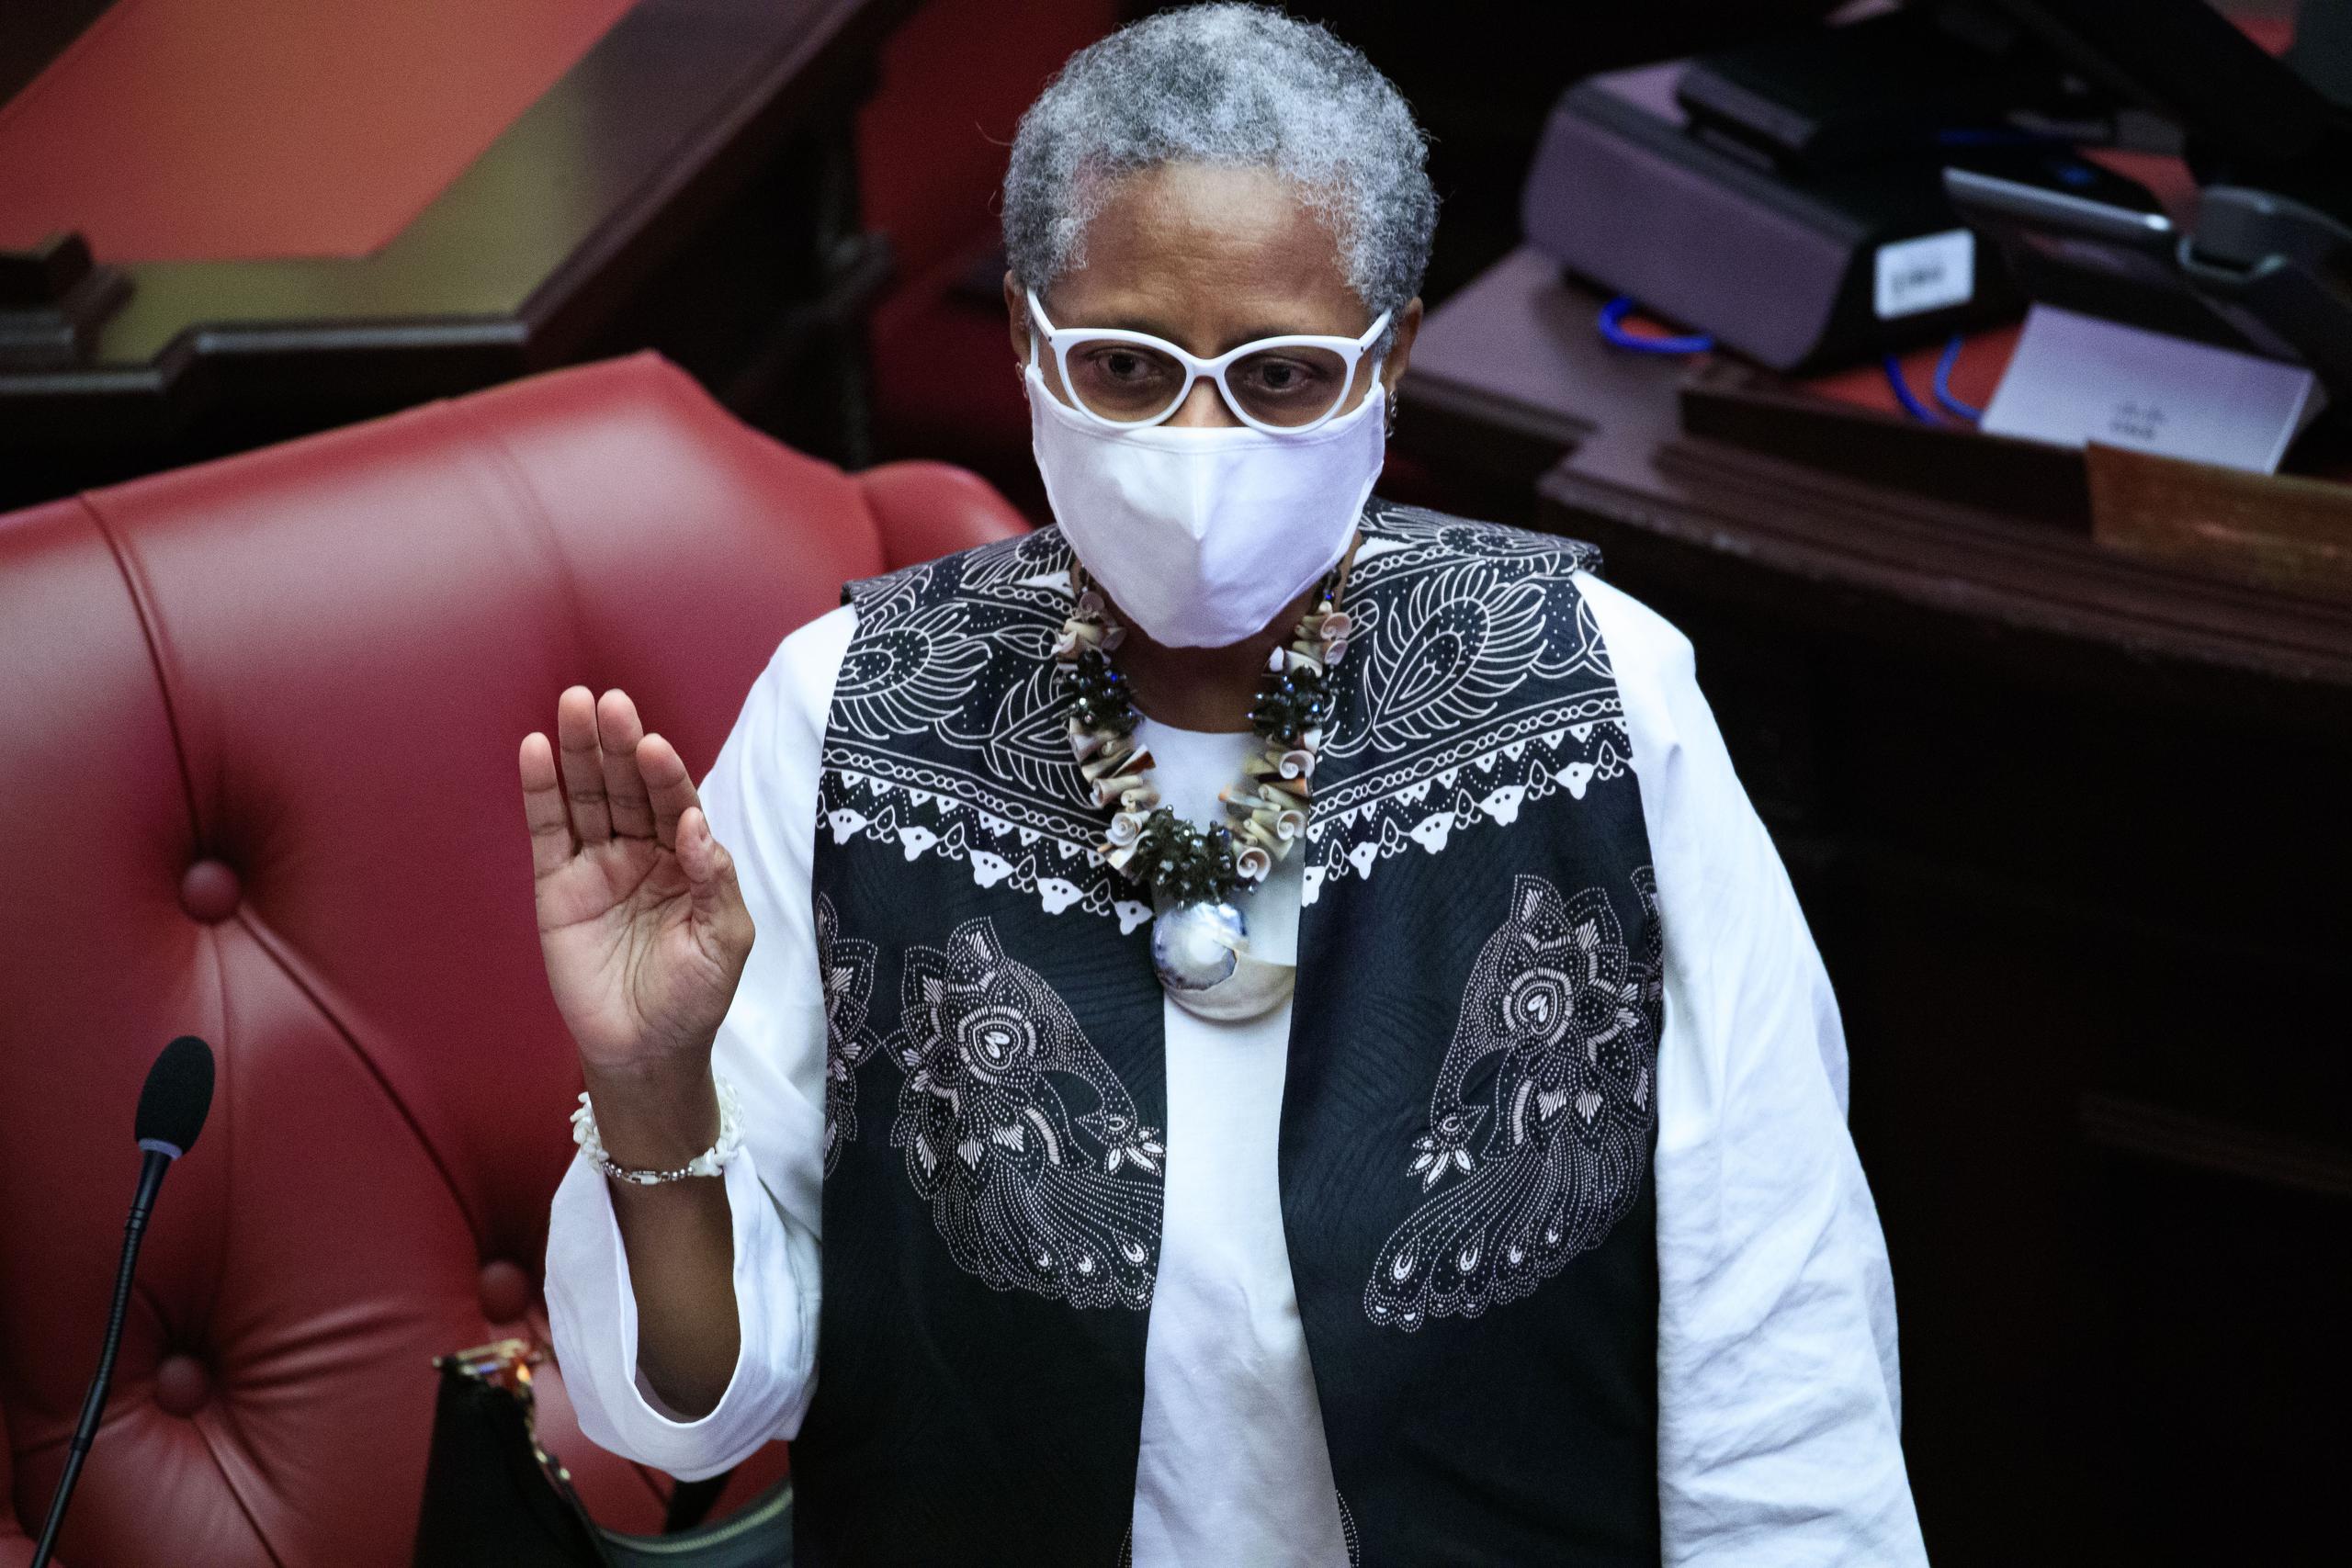 La senadora del Movimiento Victoria Ciudadana, Ana Irma Rivera Lassén dijo que las leyes aprobadas firmadas por la ex gobernadora Wanda Vázquez en sus últimos días en La Fortaleza son “un cheque en blanco” y su objetivo es partidista.